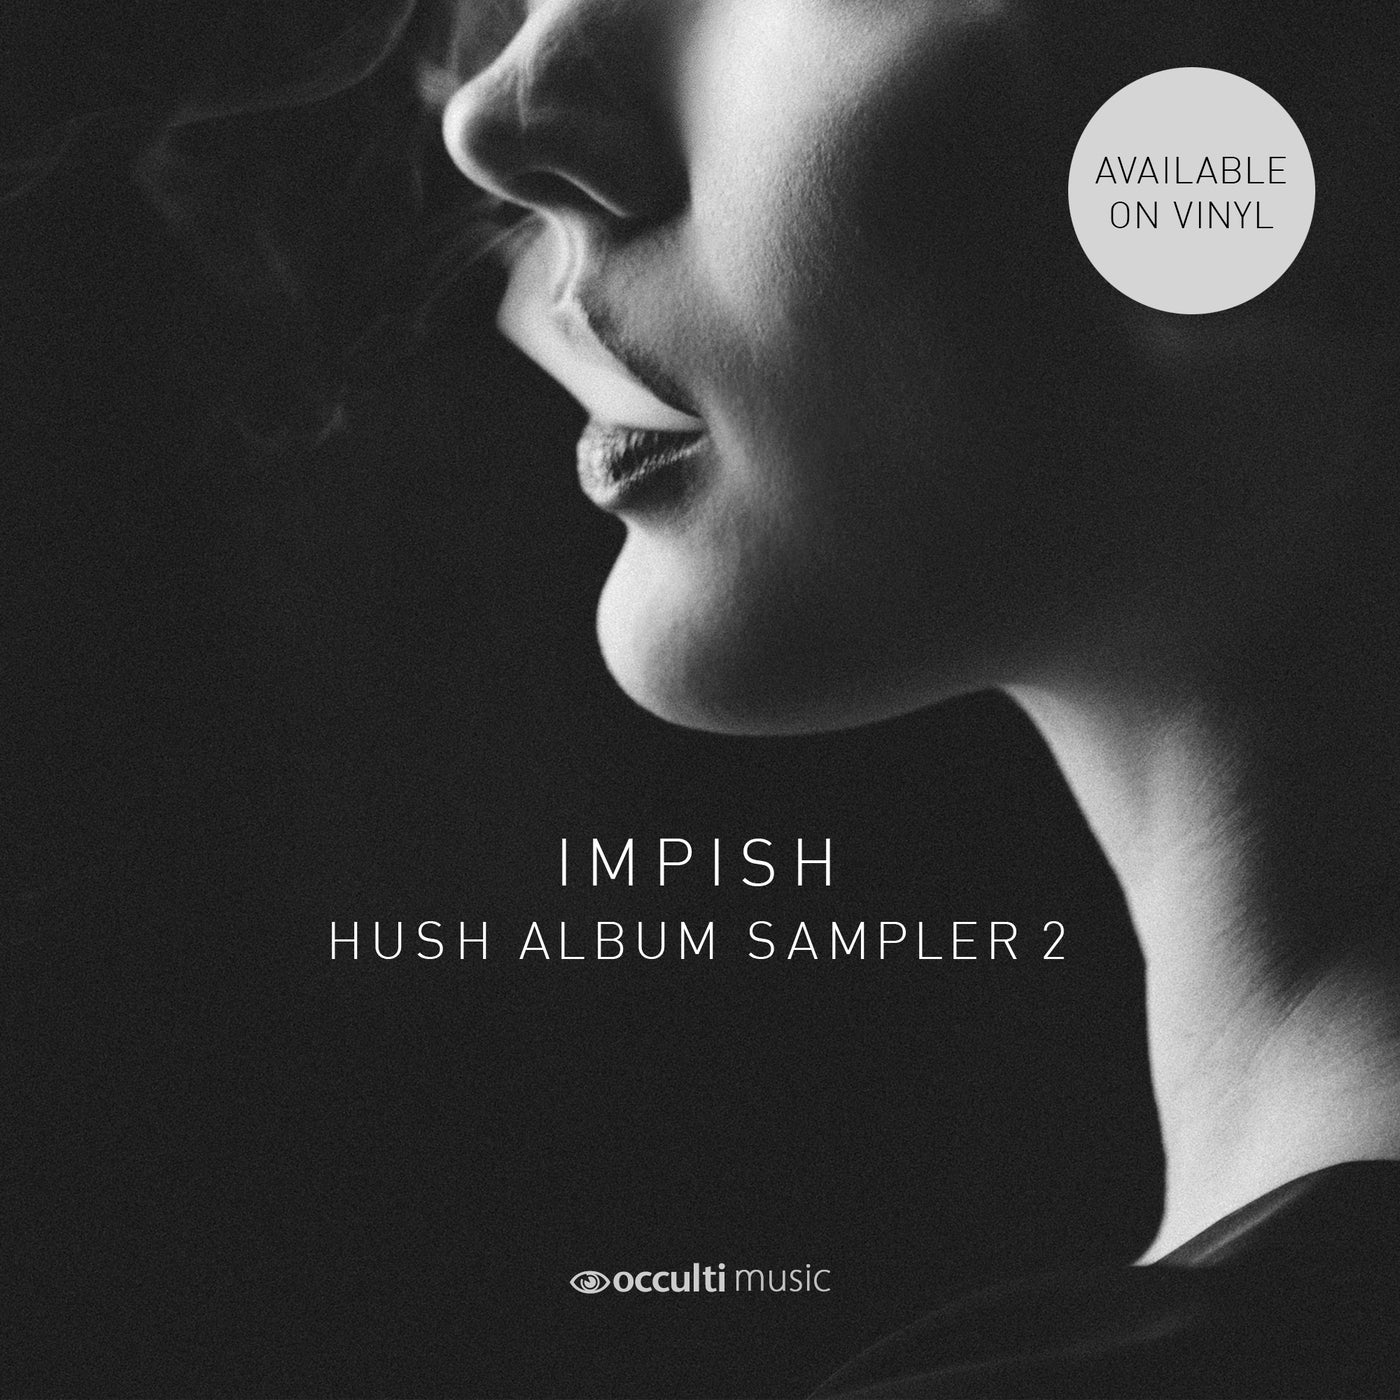 Hush - Album Sampler 2